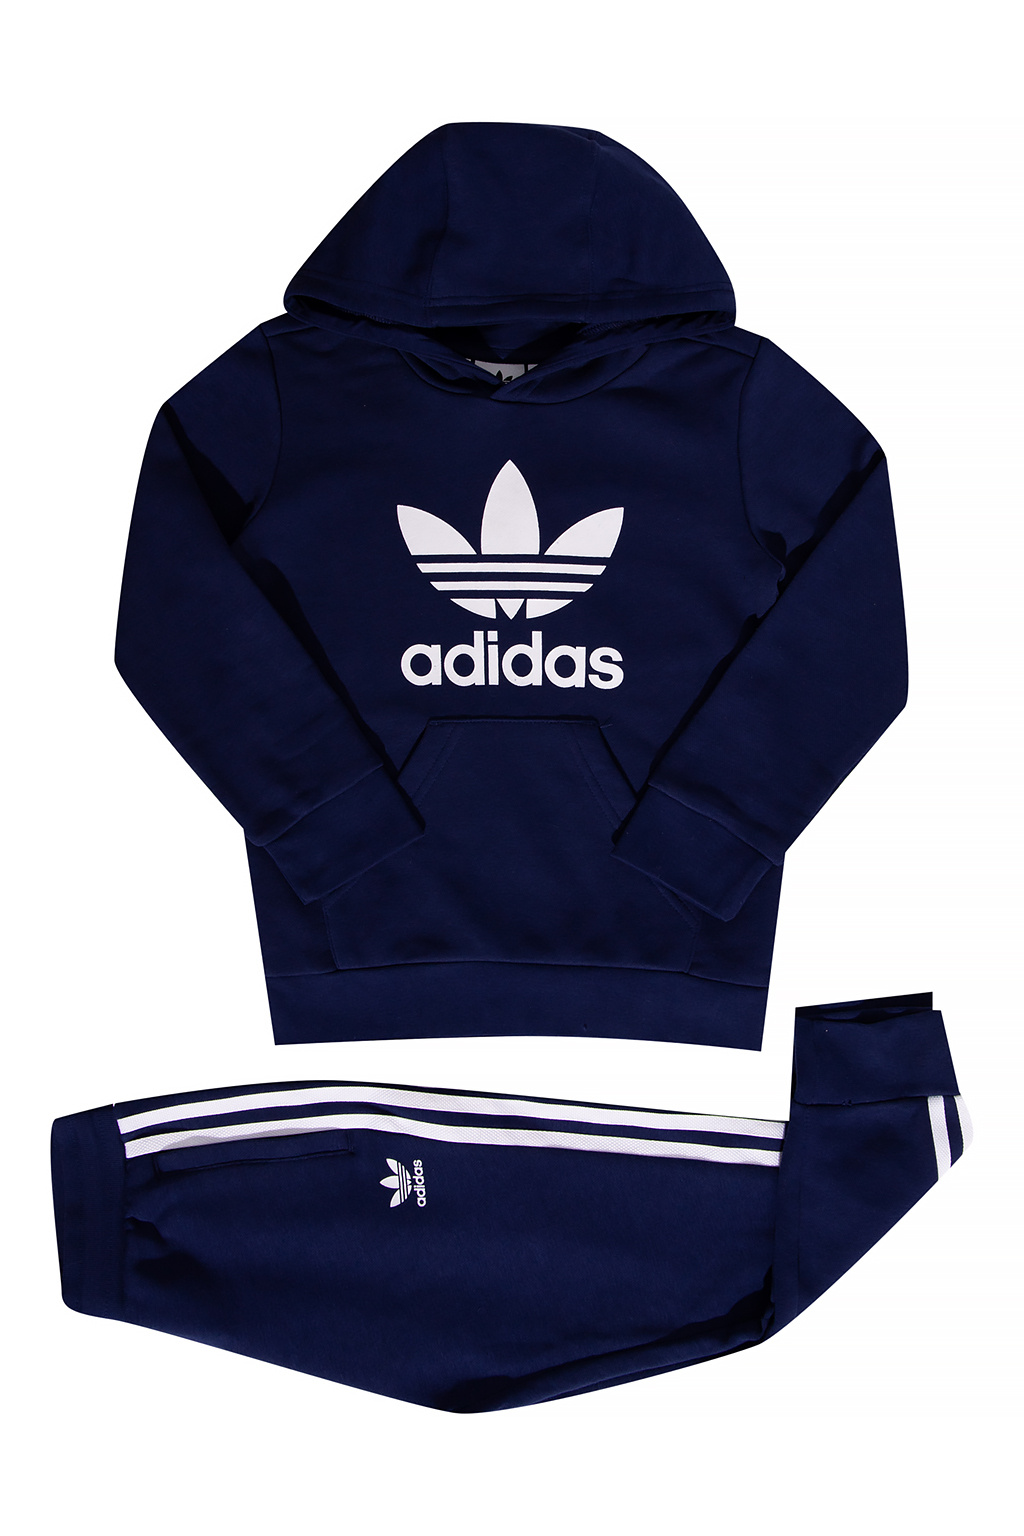 ADIDAS Kids Sweatpants & hoodie set, adidas x ivy park velour jacket  cherrywood - IetpShops, 14 years)